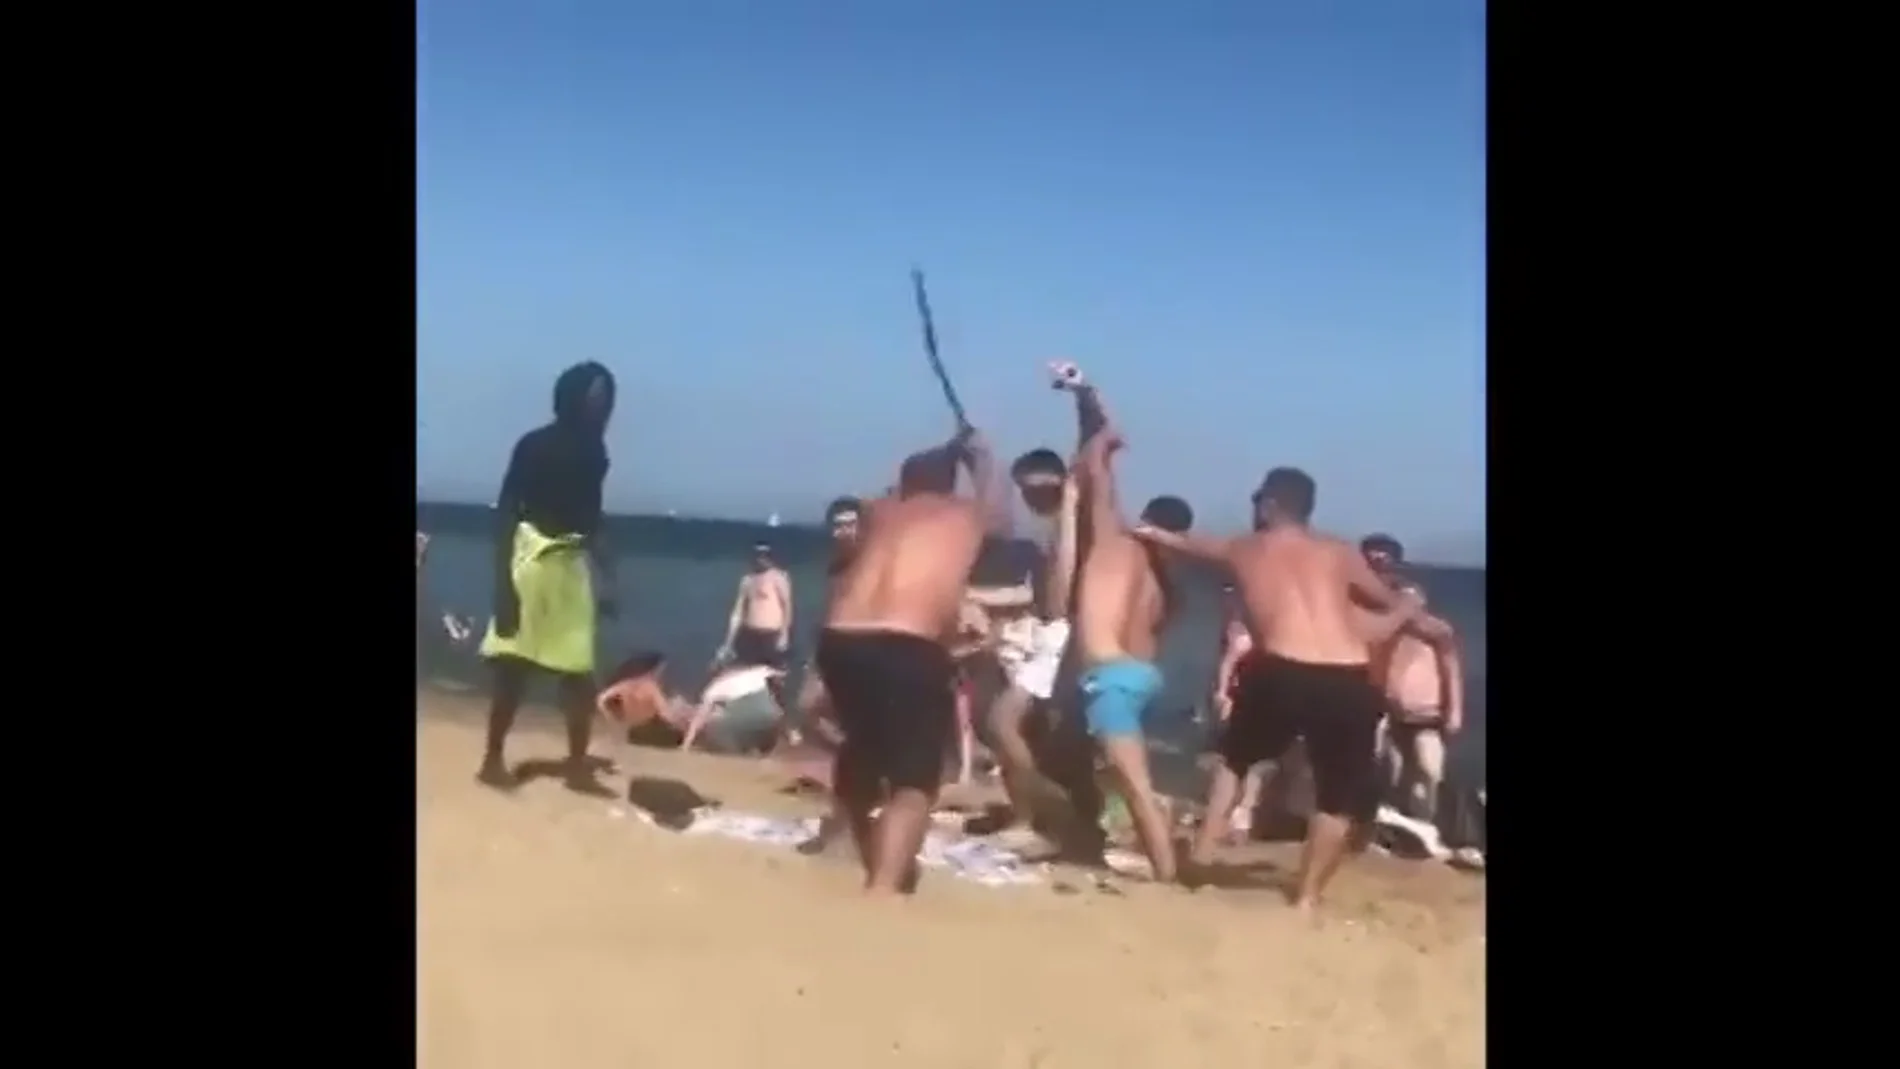 Graban una brutal pelea a palazos en plena playa de la Barceloneta